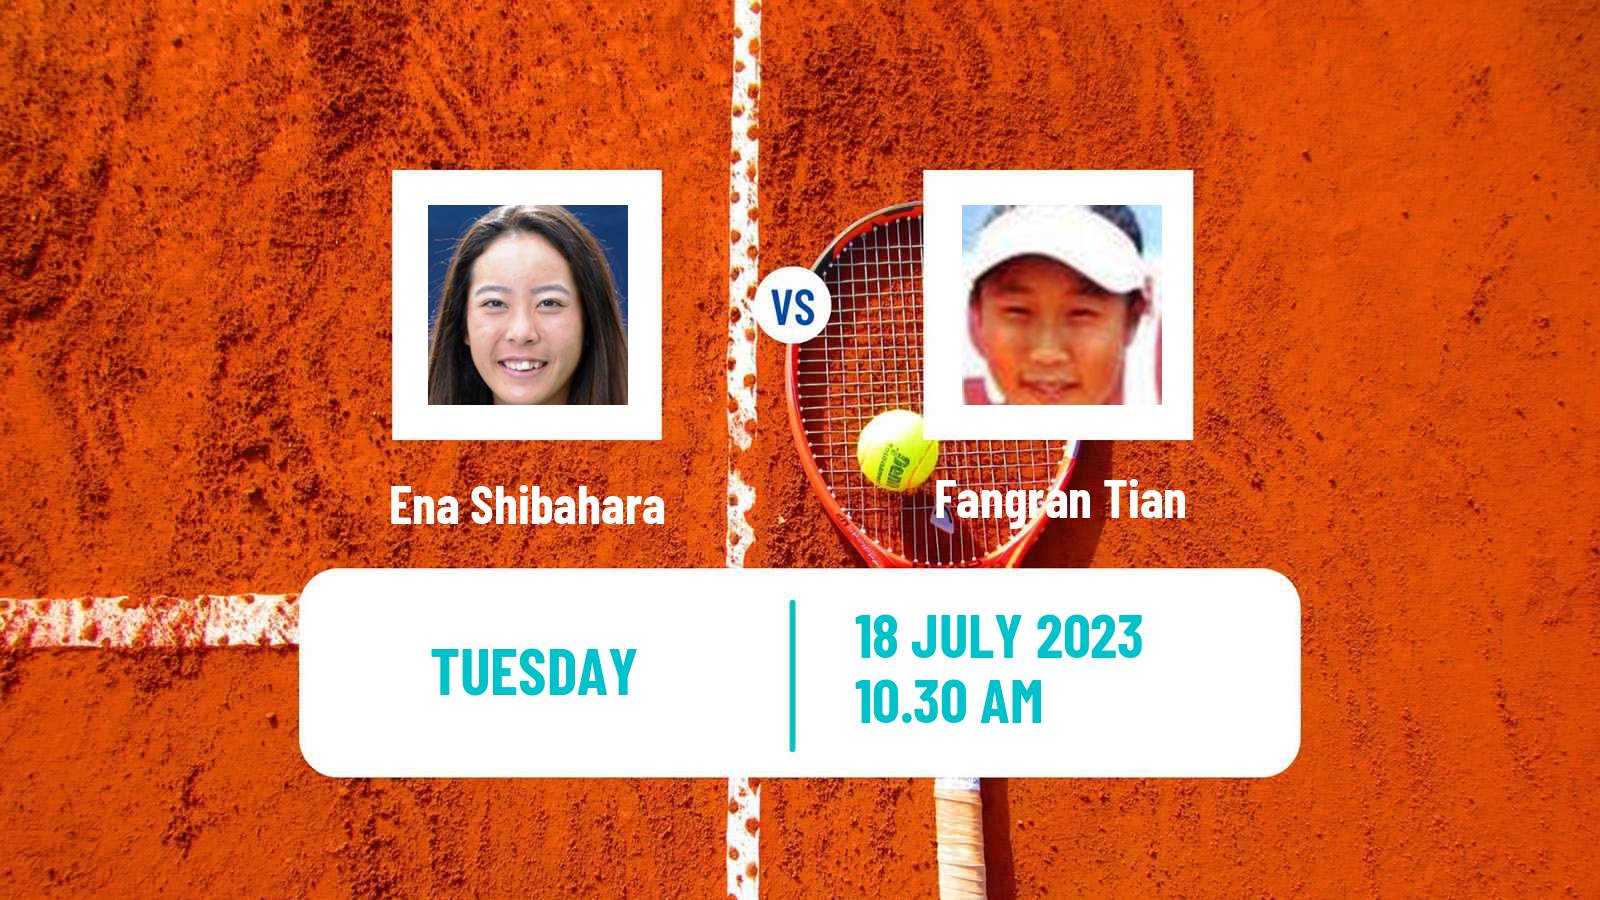 Tennis ITF W40 Porto 3 Women Ena Shibahara - Fangran Tian